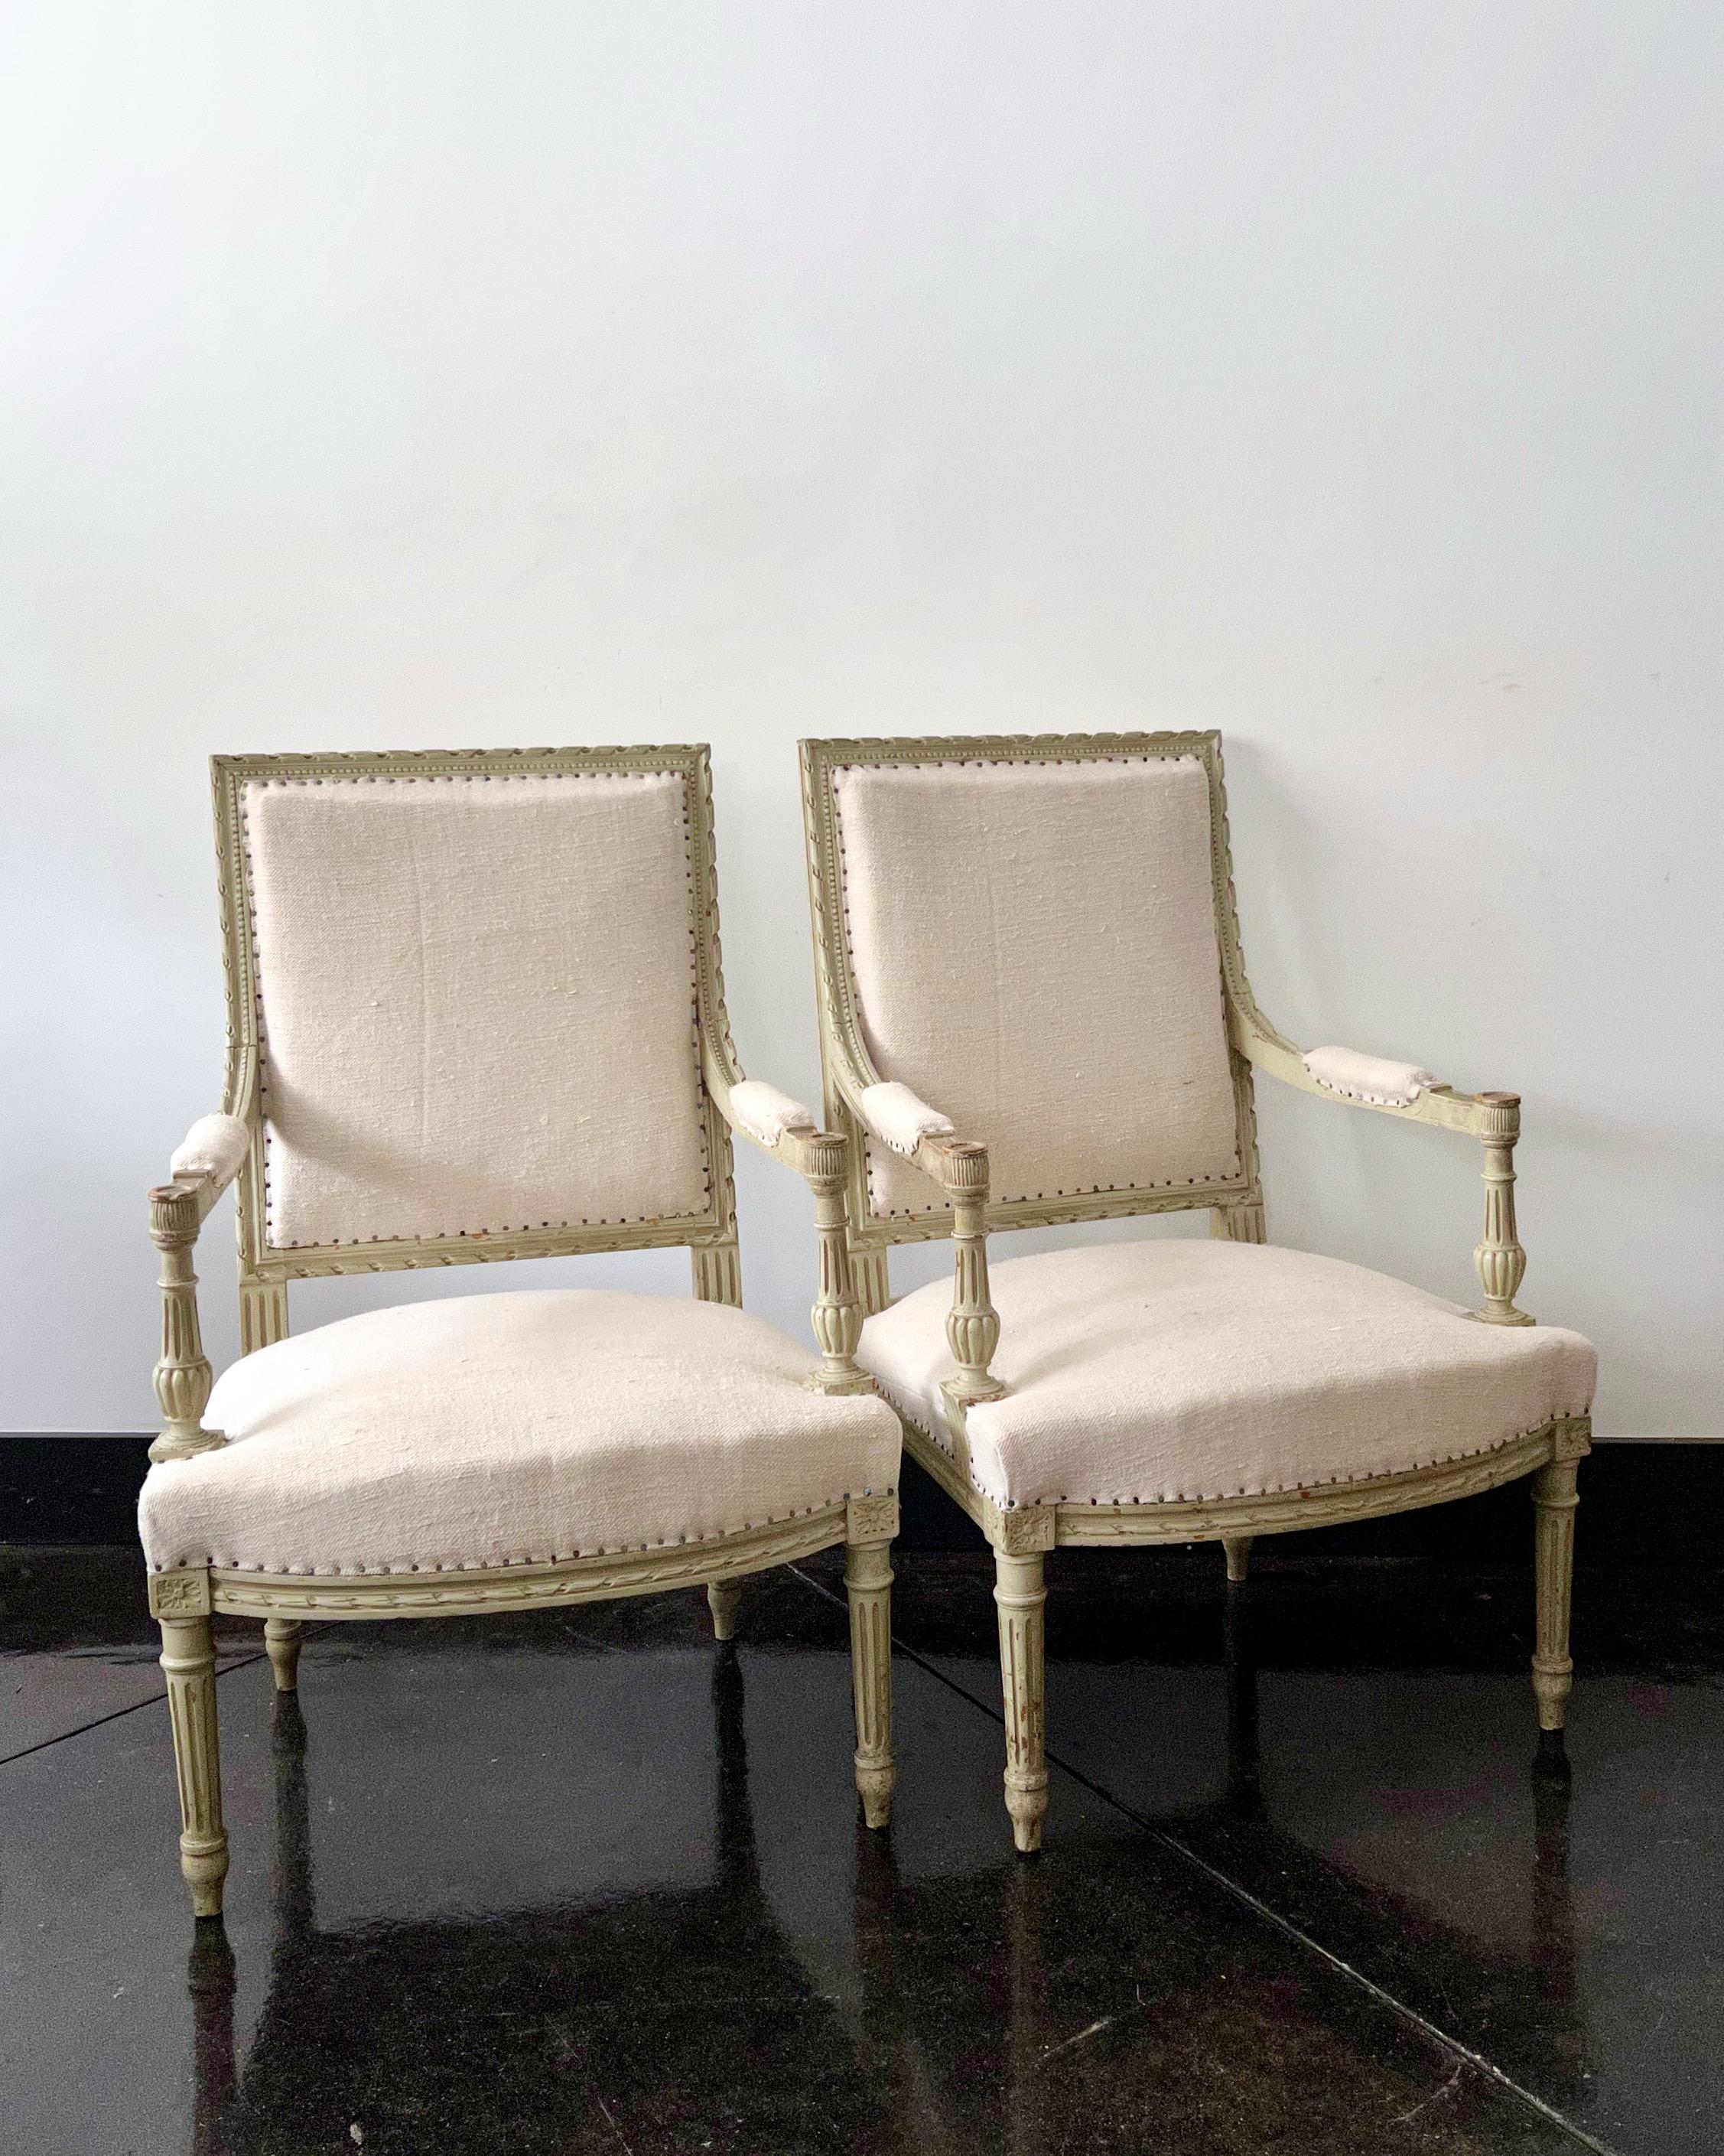 Paire de fauteuils à la reine français du XIXe siècle, à dossier plat et accoudoir richement sculpté d'acanthes et de rosettes sur des pieds fuselés cannelés, dans leur finition usée d'origine.
Tapissé de lin brut.